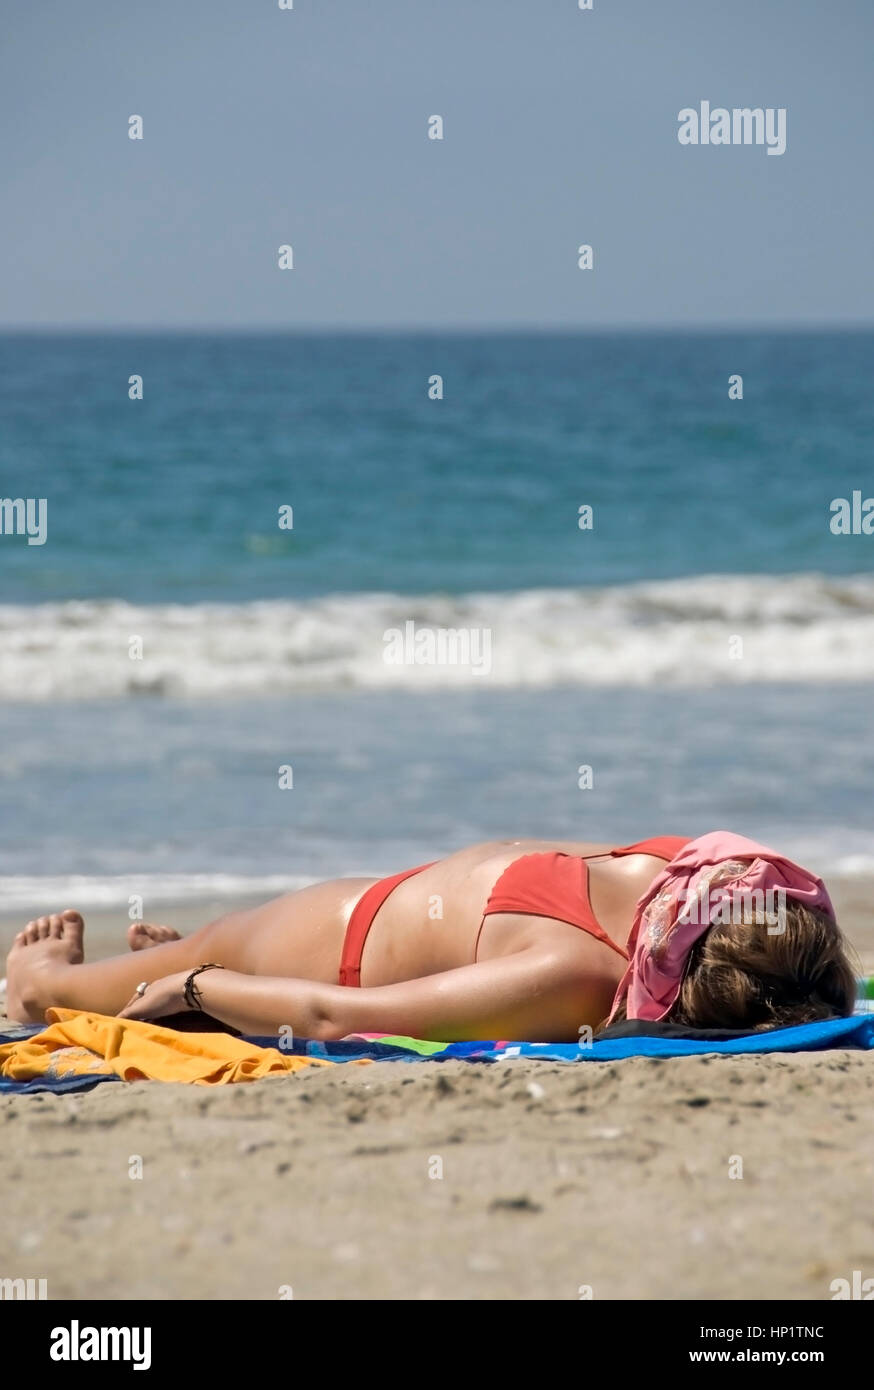 Frau im Bikini sonnt sich am Sandstrand - donna in bikini suns in spiaggia Foto Stock